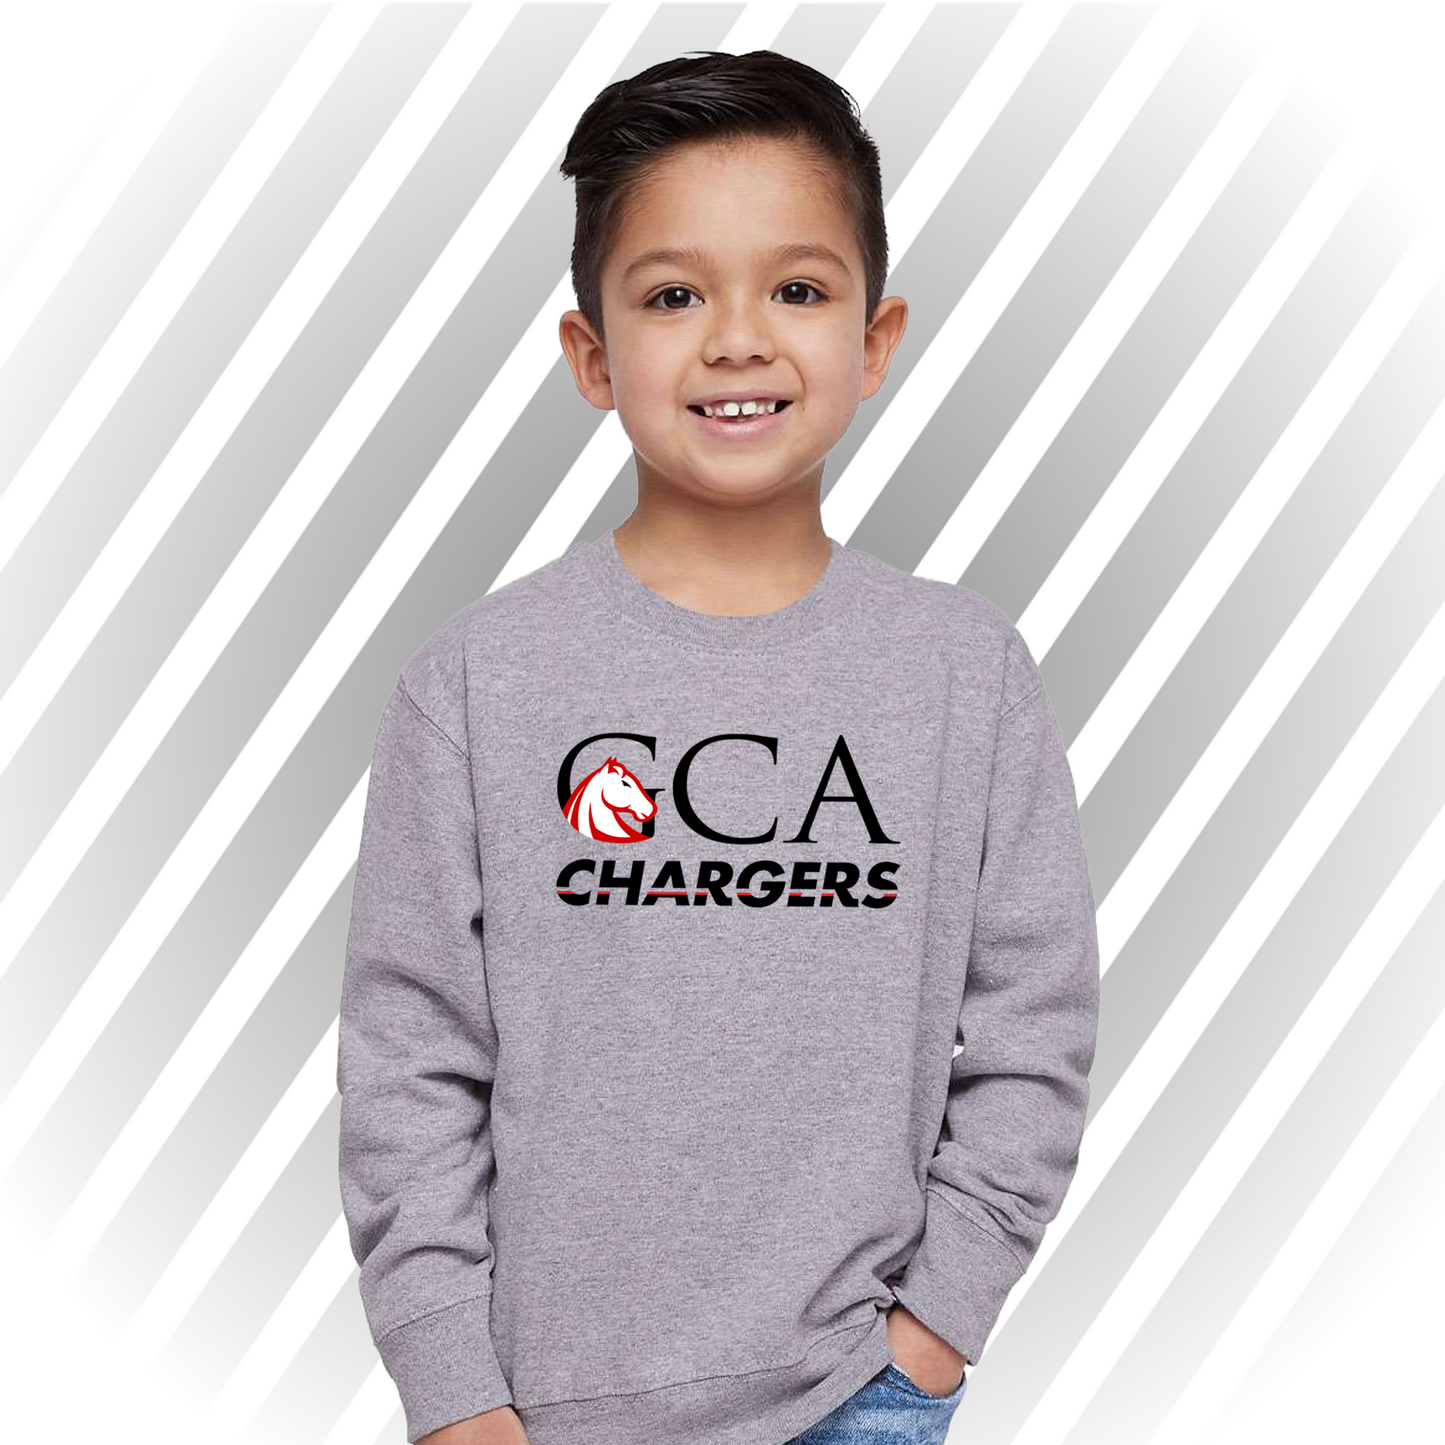 GCA Chargers - Toddler Crewneck Sweater